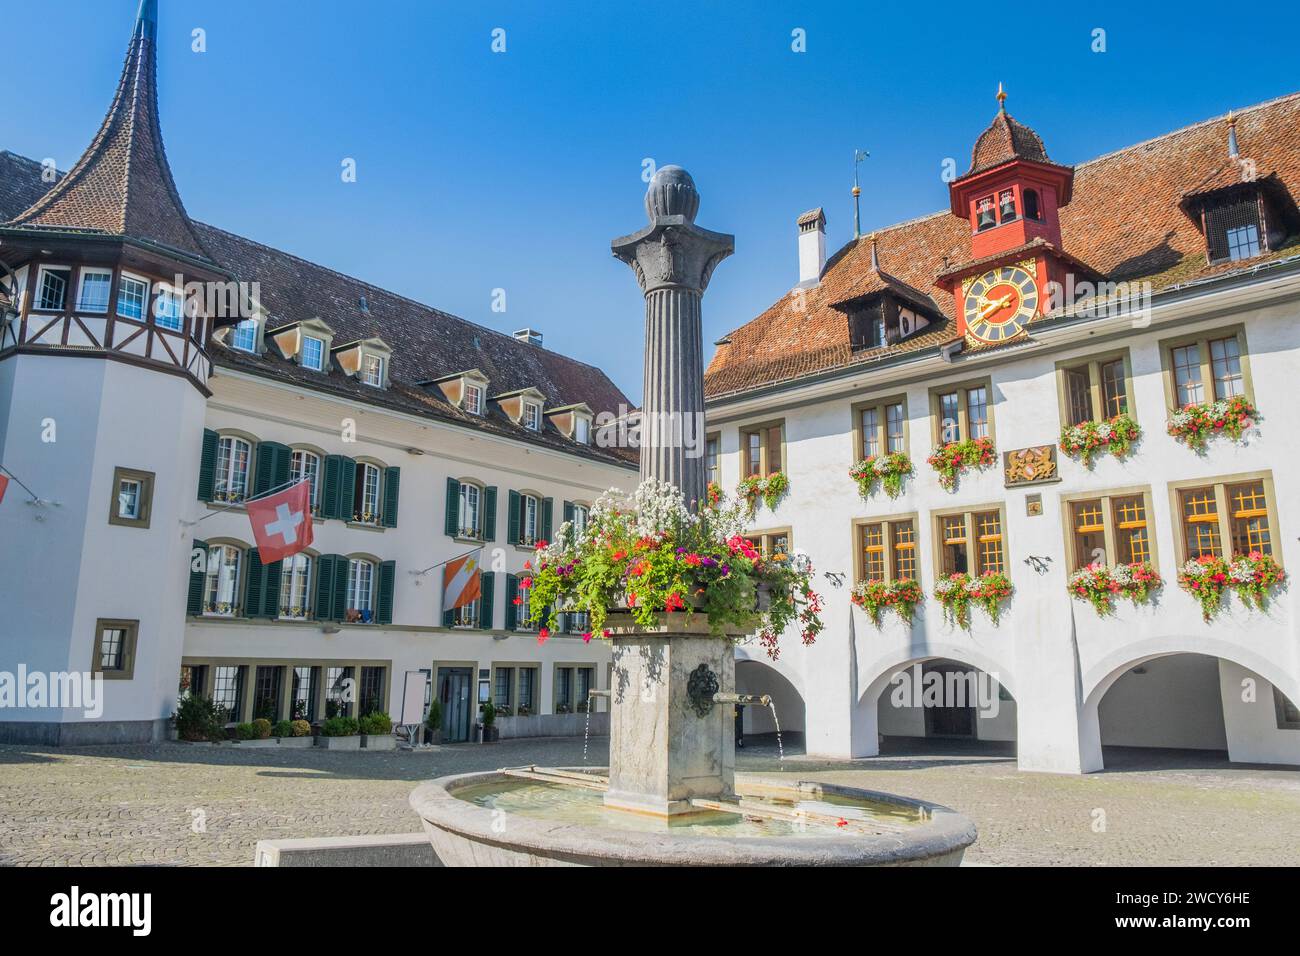 Belle place avec des bâtiments classiques dans la vieille ville historique de Thoune, Suisse Banque D'Images